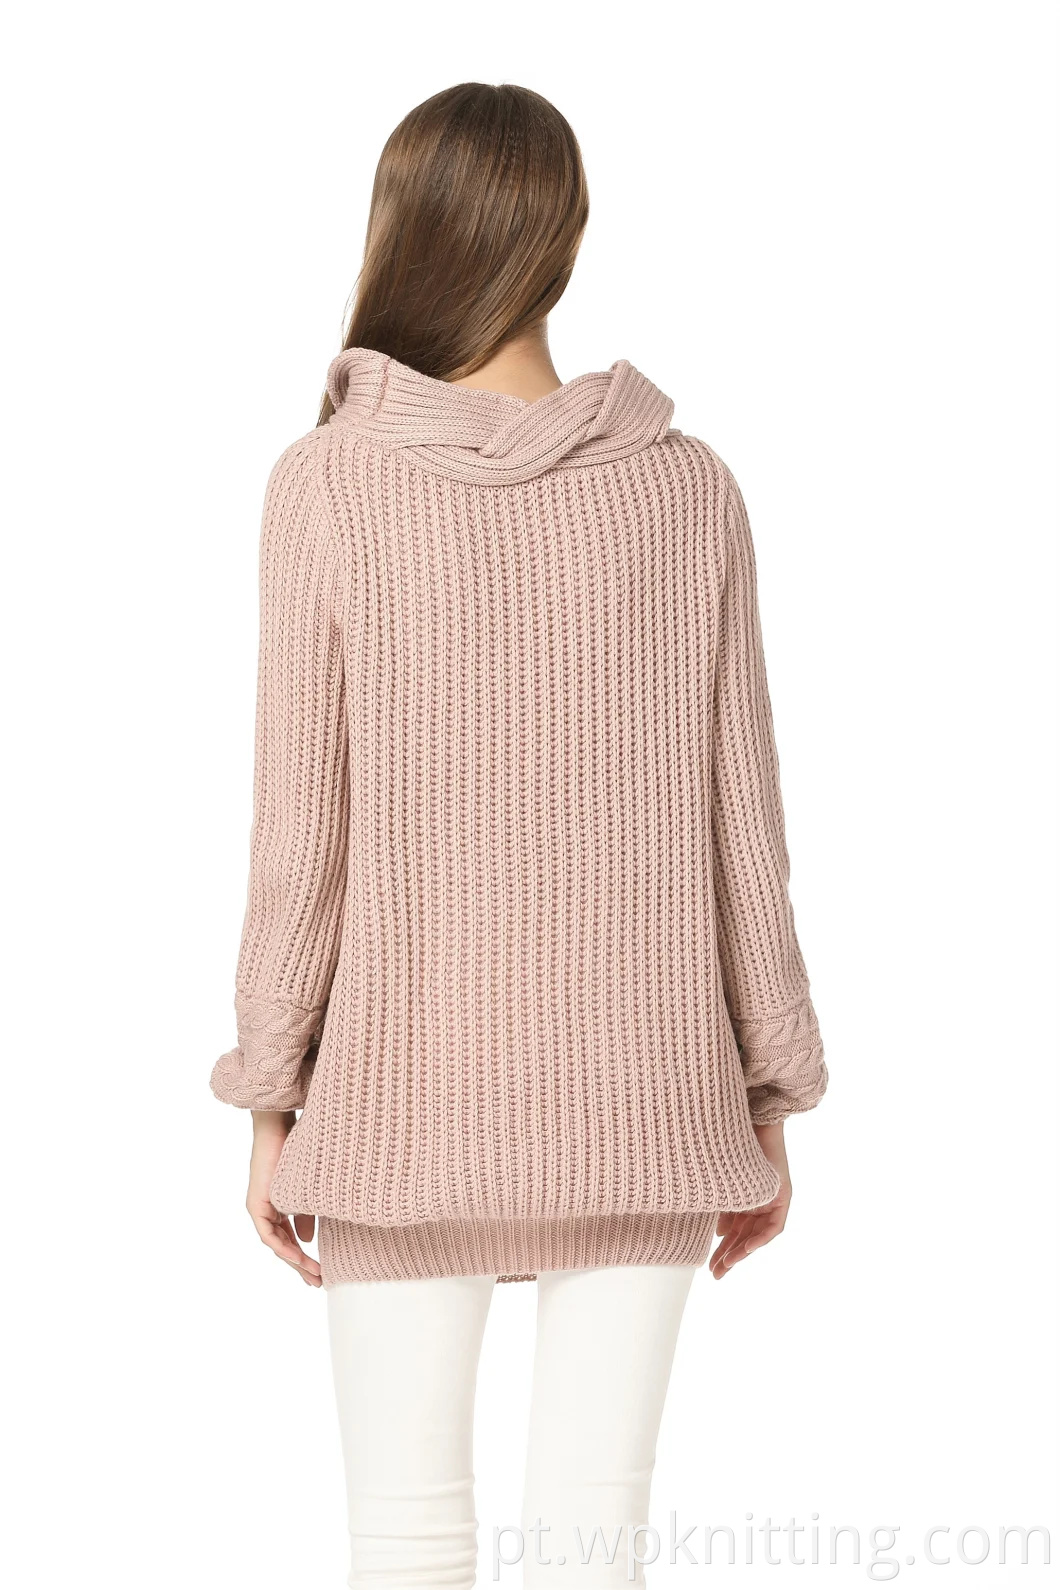 Camisolador de gola alta do suéter feminino Apparado de moda casual malha de inverno